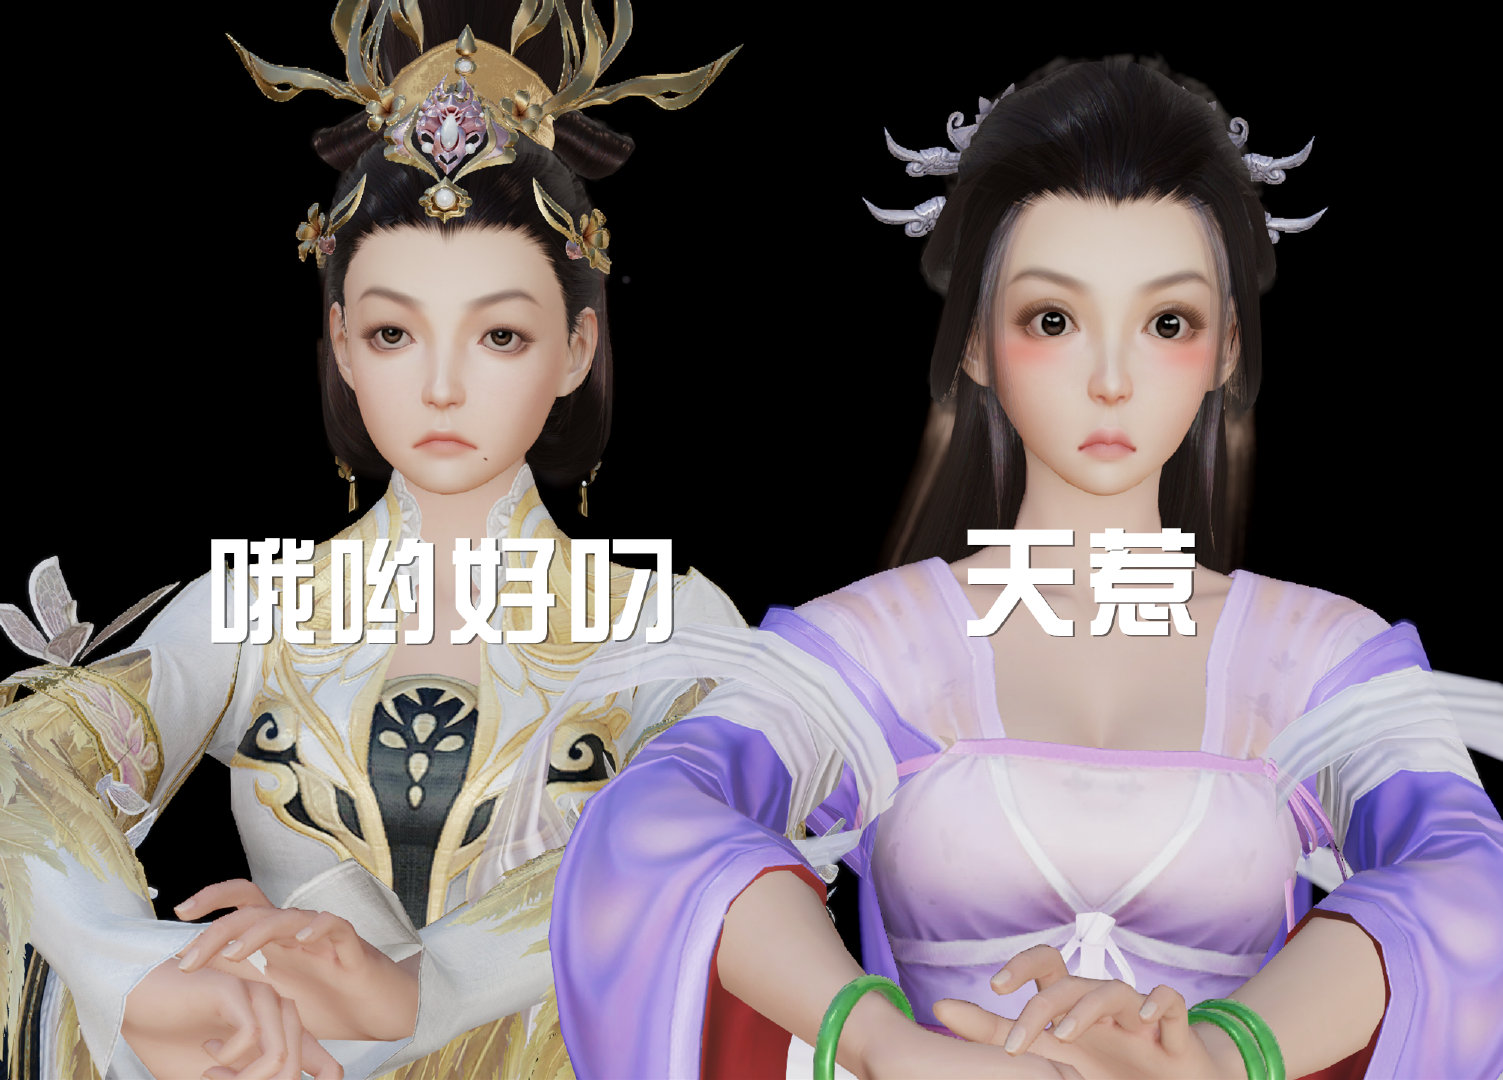 剑3捏脸系统：有人捏成刘亦菲、有人捏出妖怪、还有人捏出鬼故事